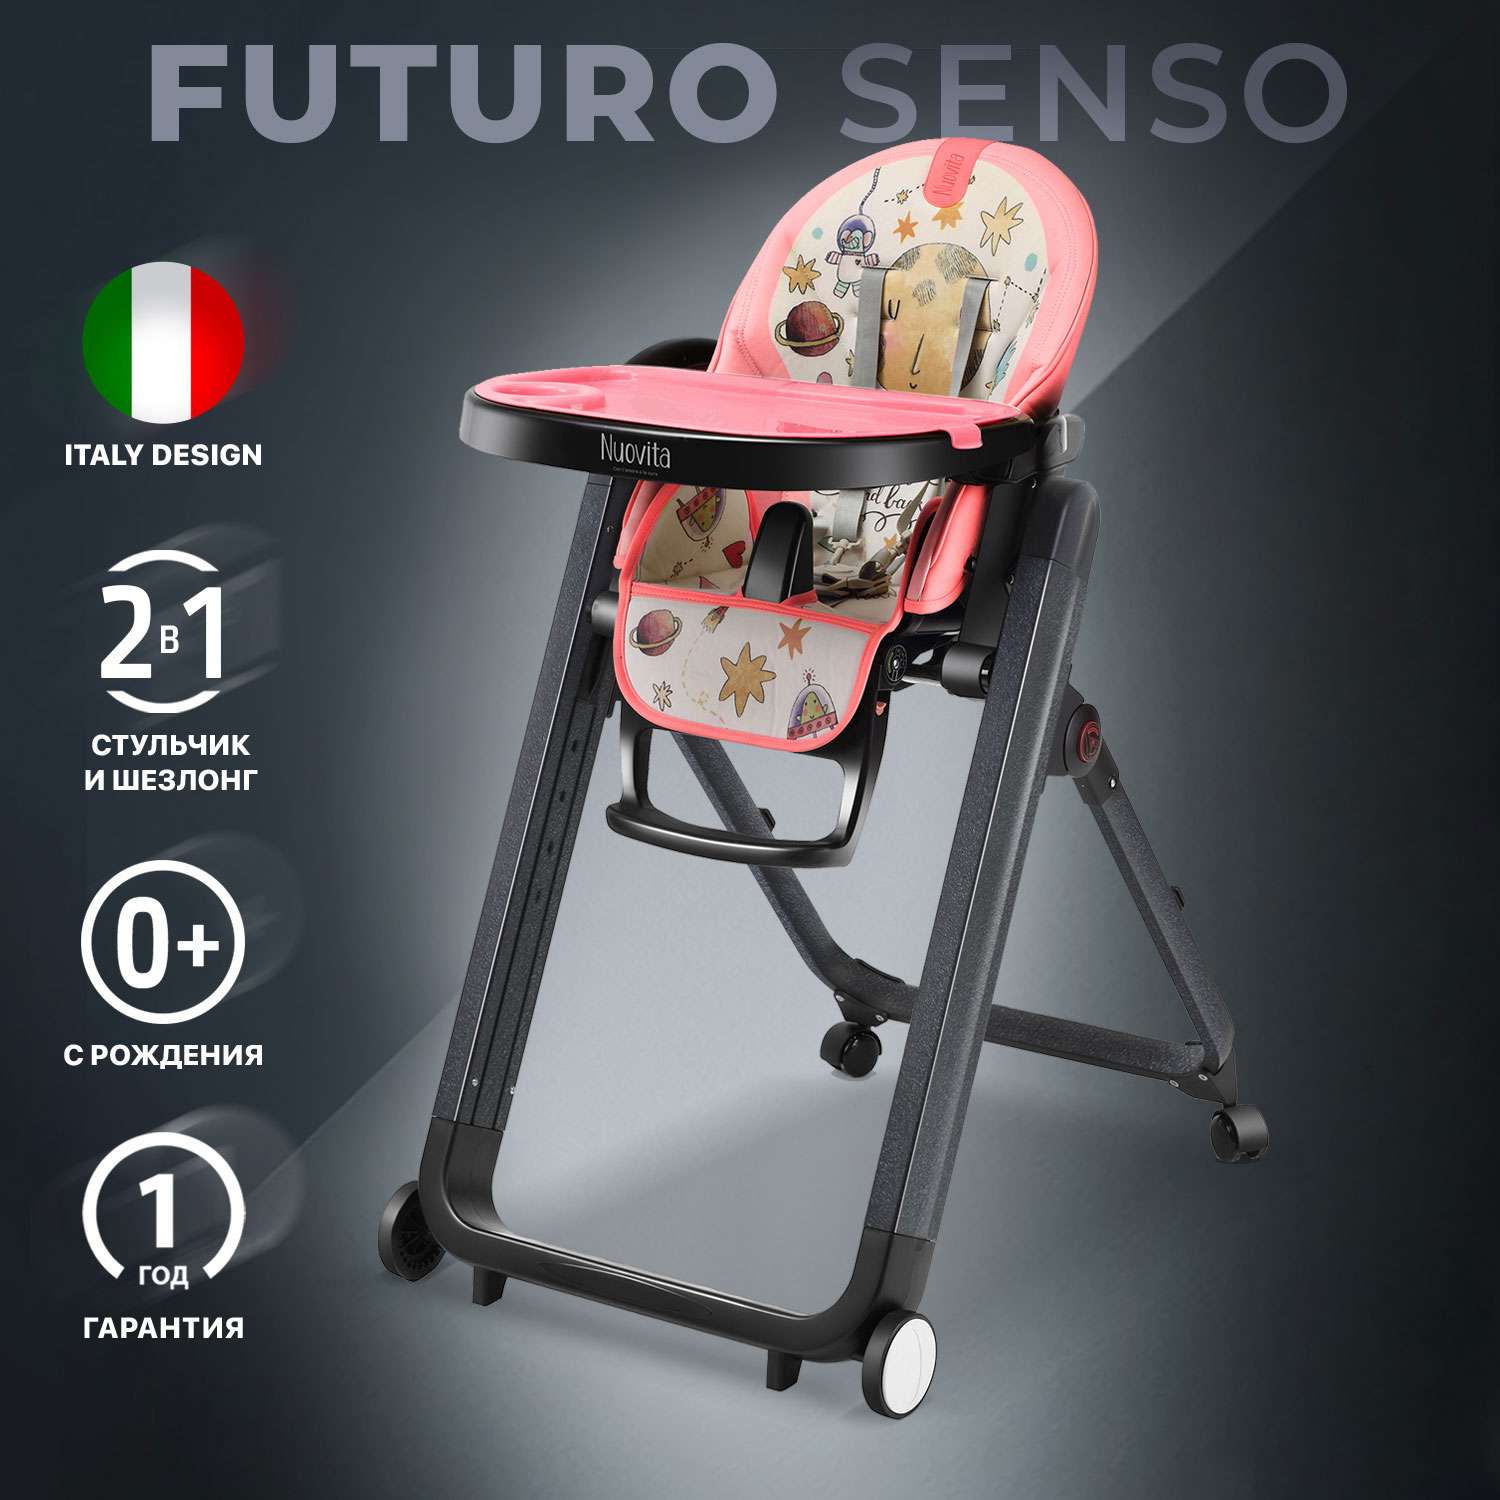 Стульчик для кормления Nuovita Futuro Senso Nero Розовый космос - фото 2